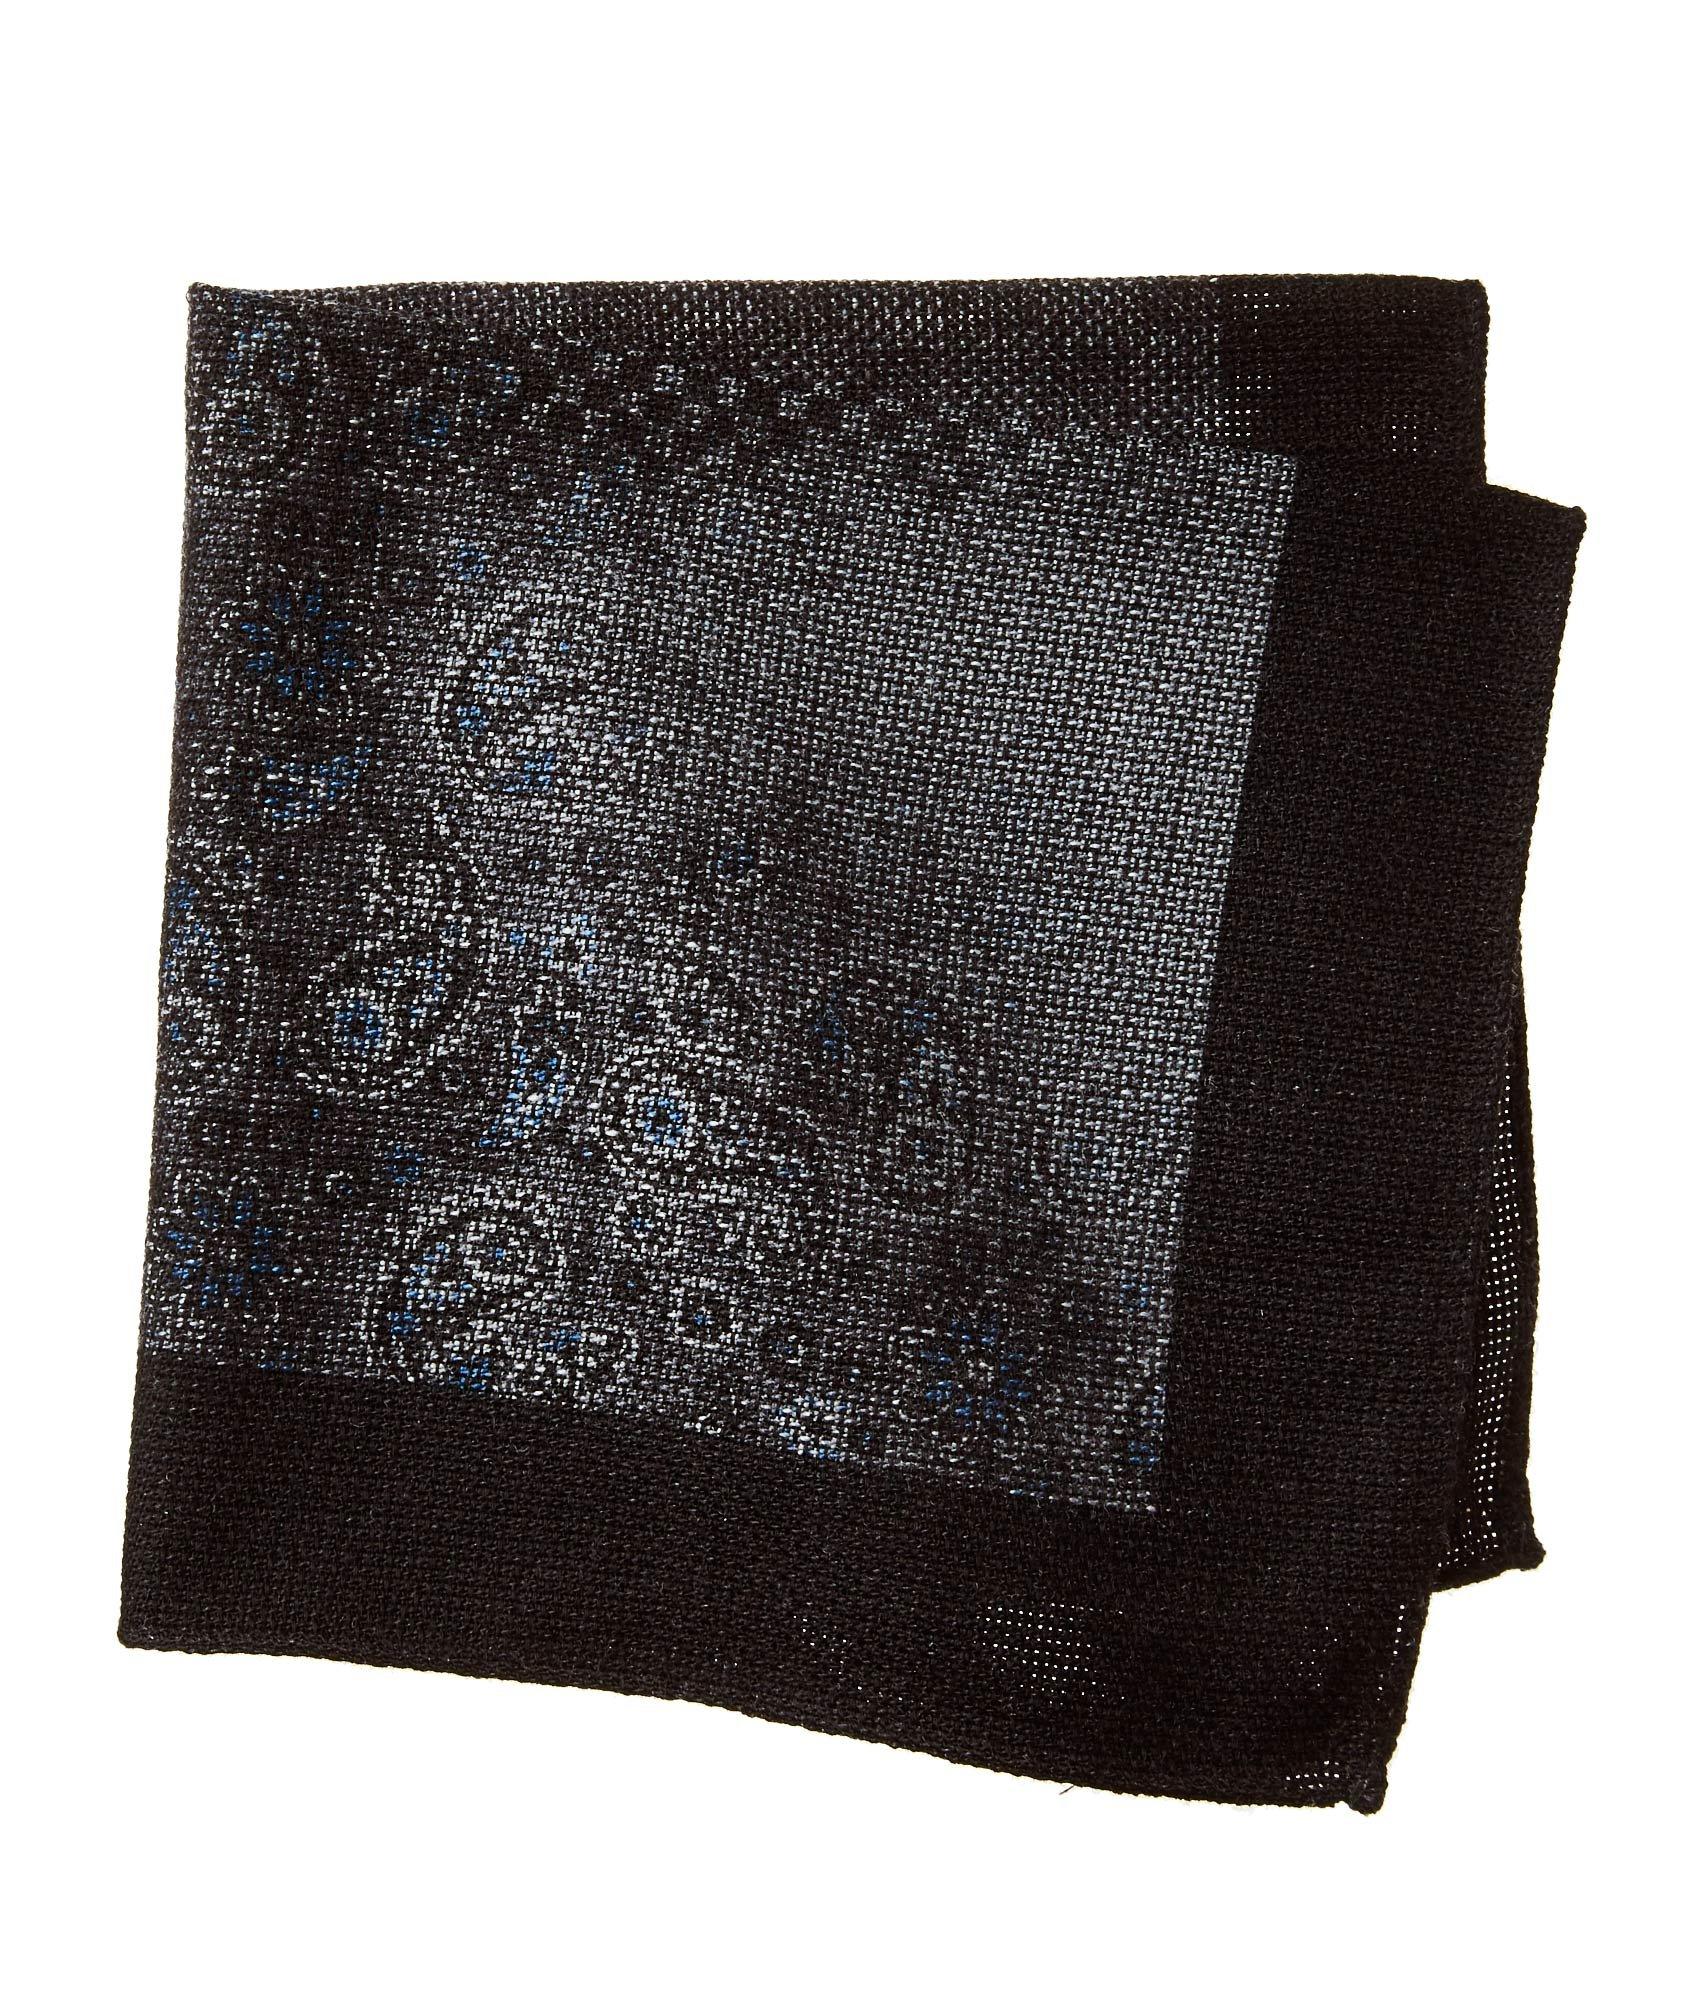 Mouchoir de poche imprimé en laine et soie image 0